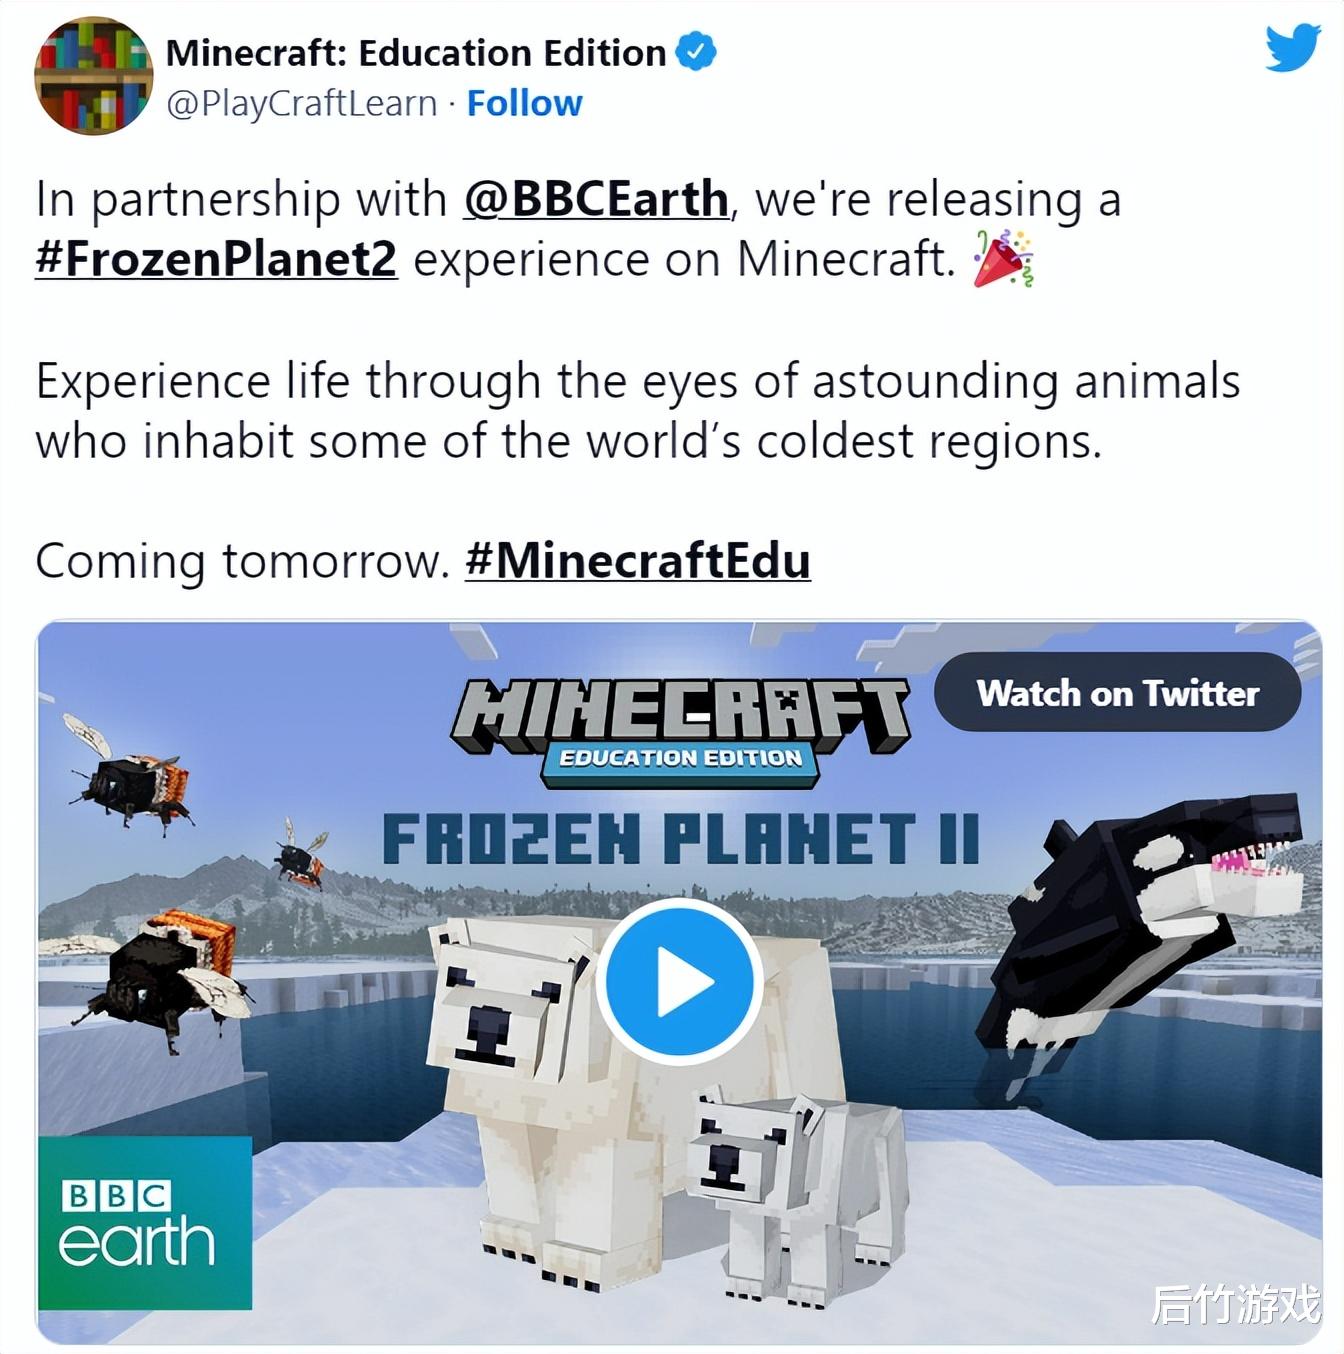 《我的世界》教育版聯合BBC Earth推出《冰